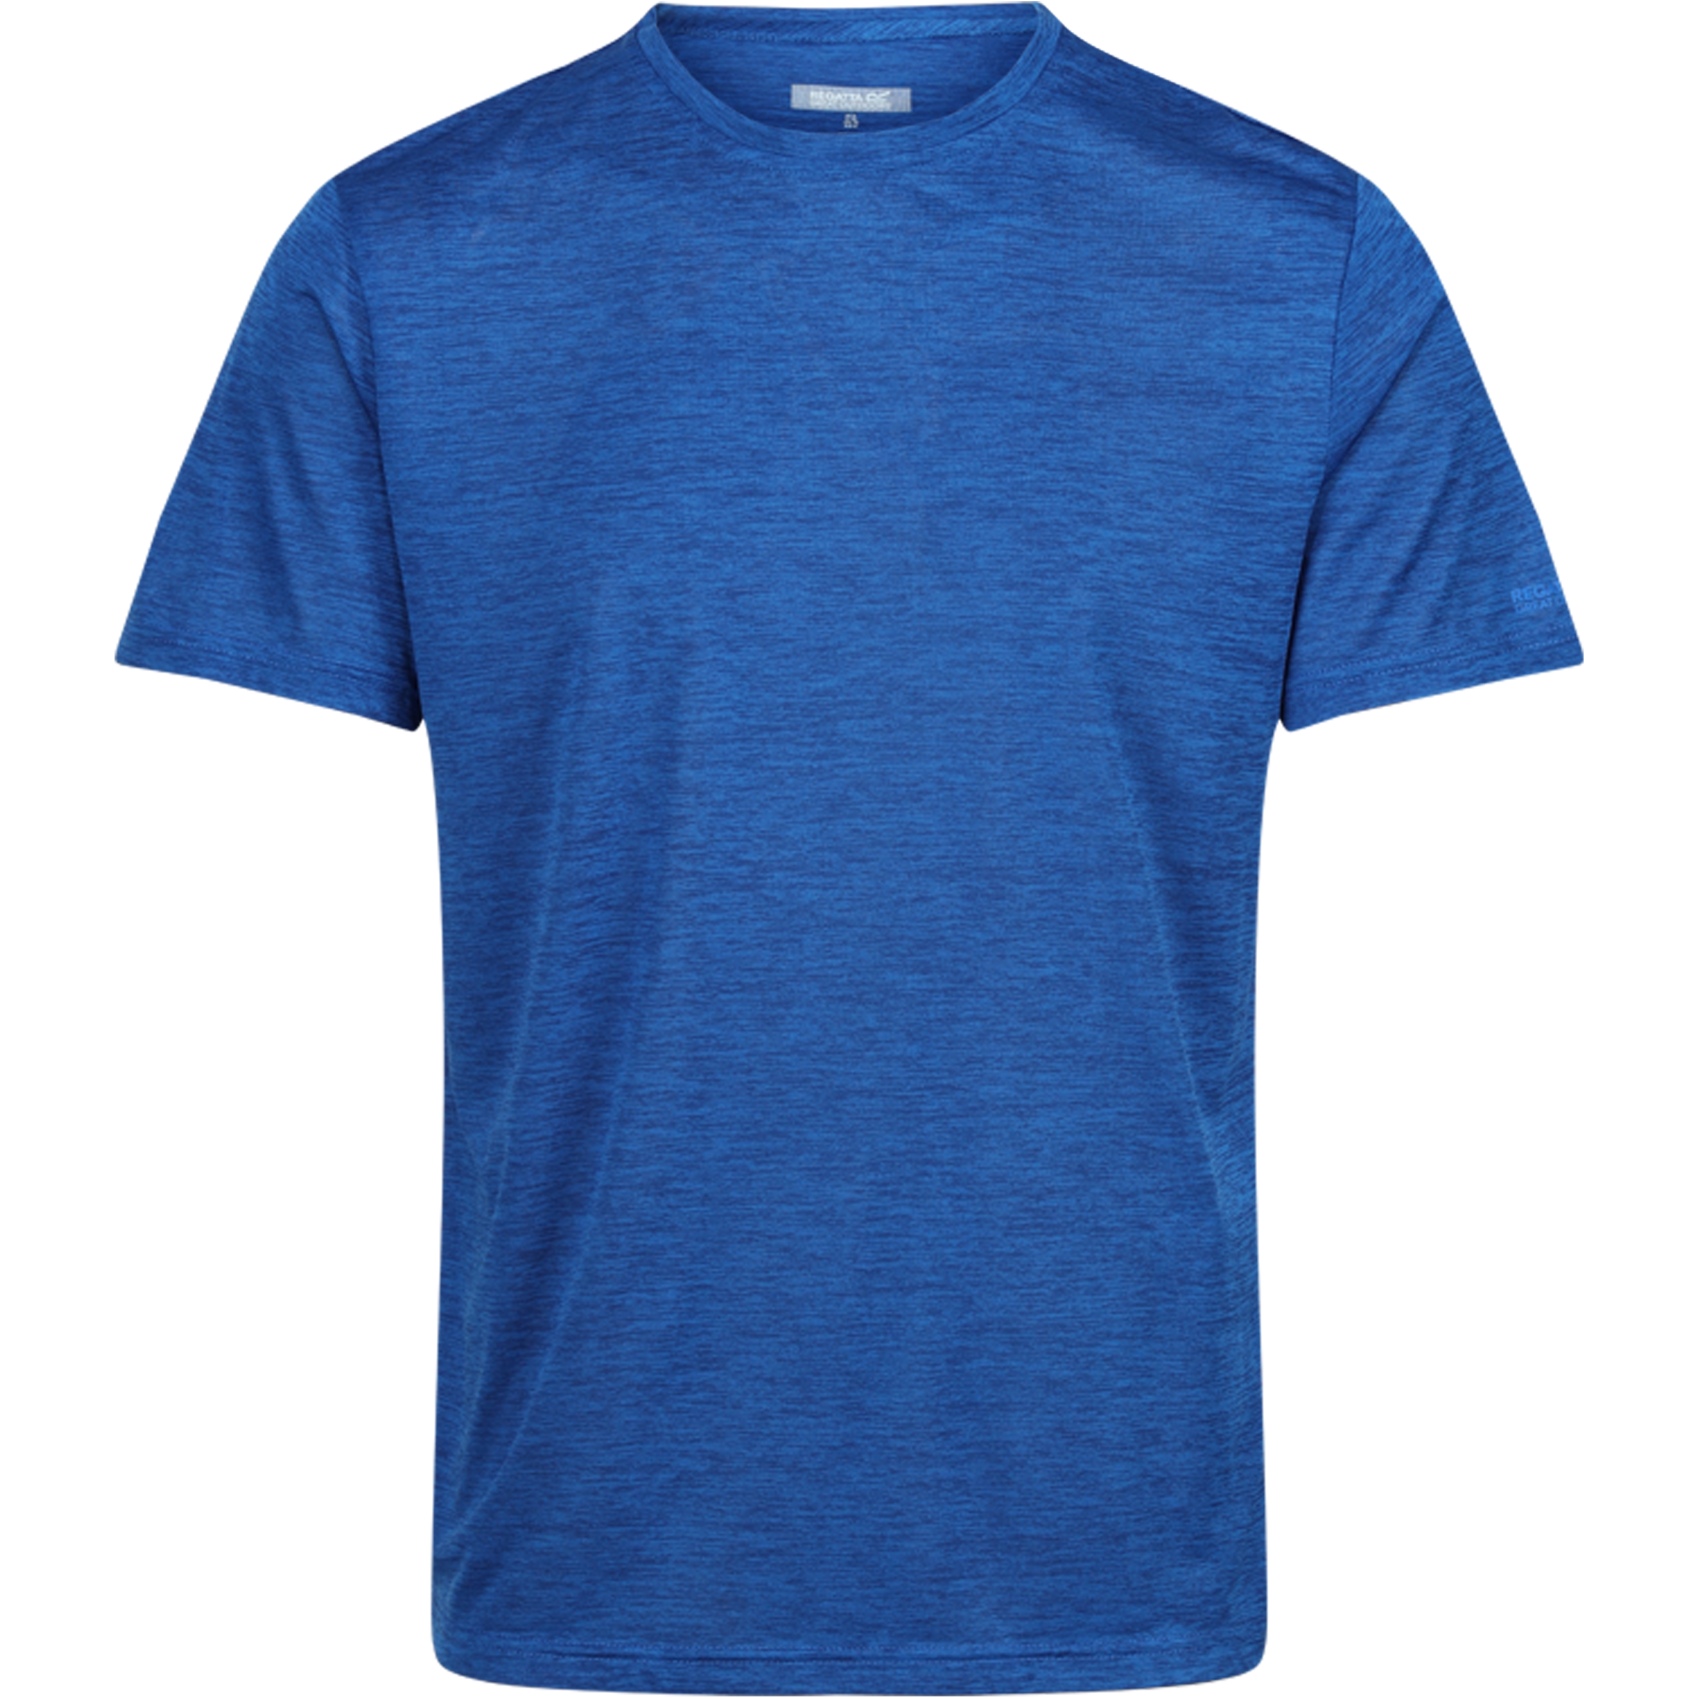 Produktbild von Regatta Fingal Edition T-Shirt Herren - Oxford Blue 015